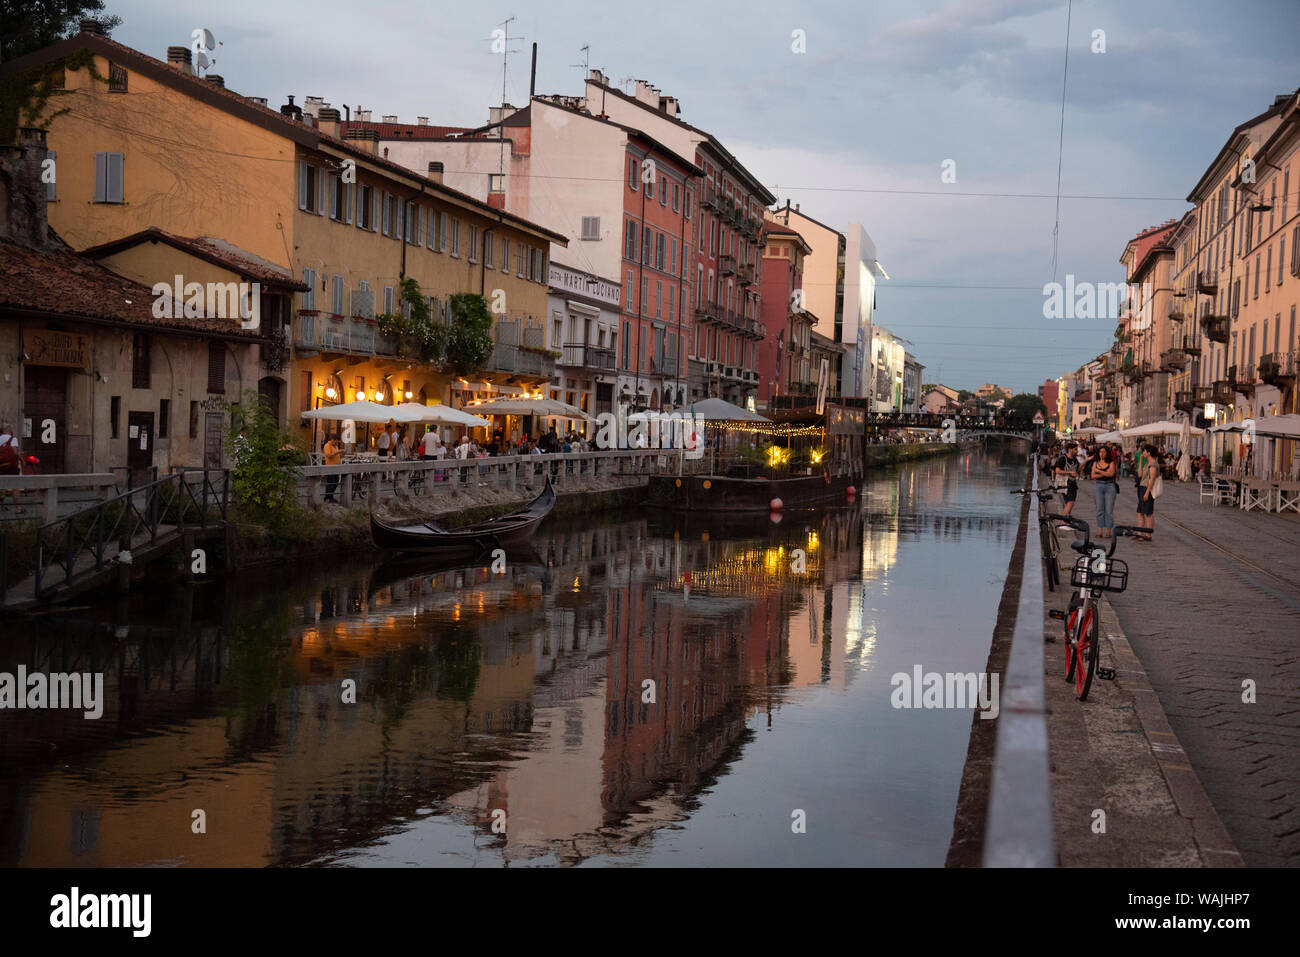 L'Italie, Lombardie, Milan. Historic canal Naviglio Grande région connue pour sa vie nocturne animée Banque D'Images